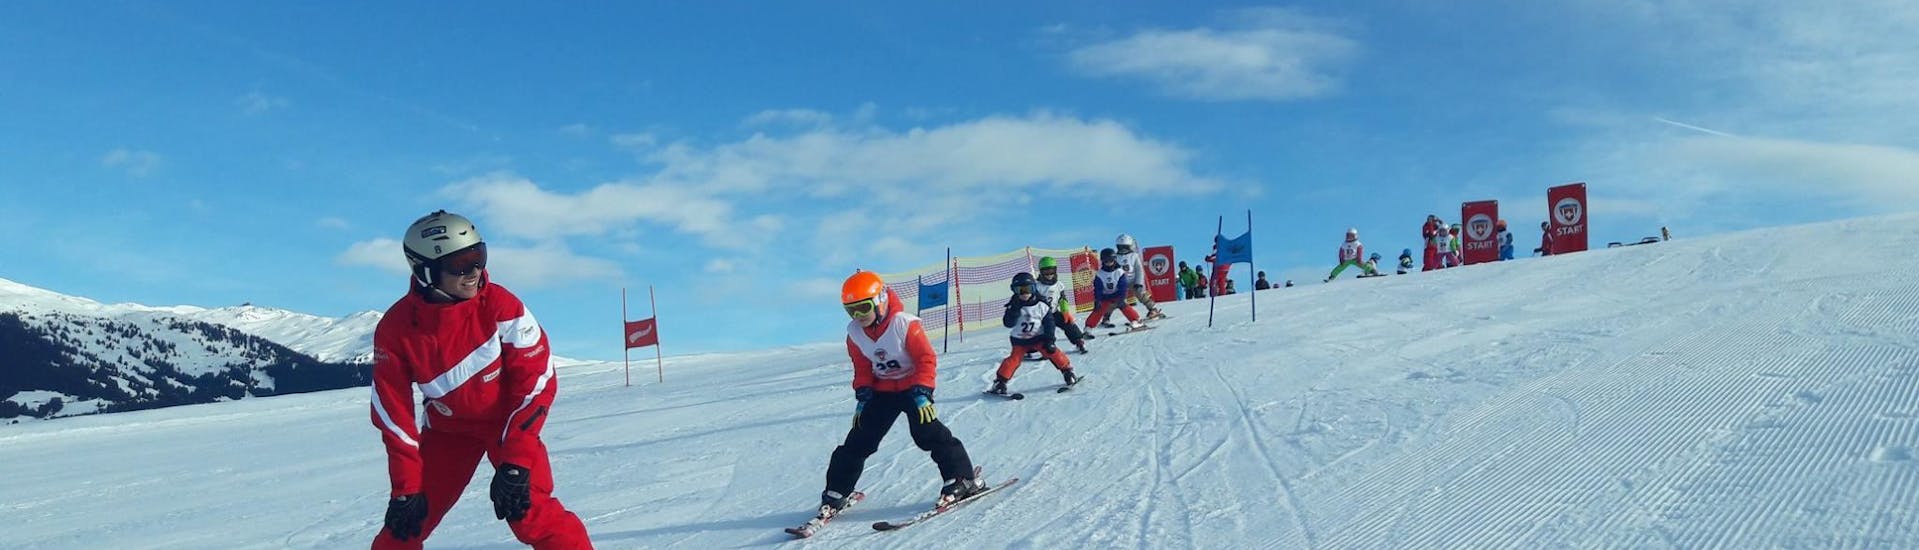 Skilessen voor kinderen - ervaren.